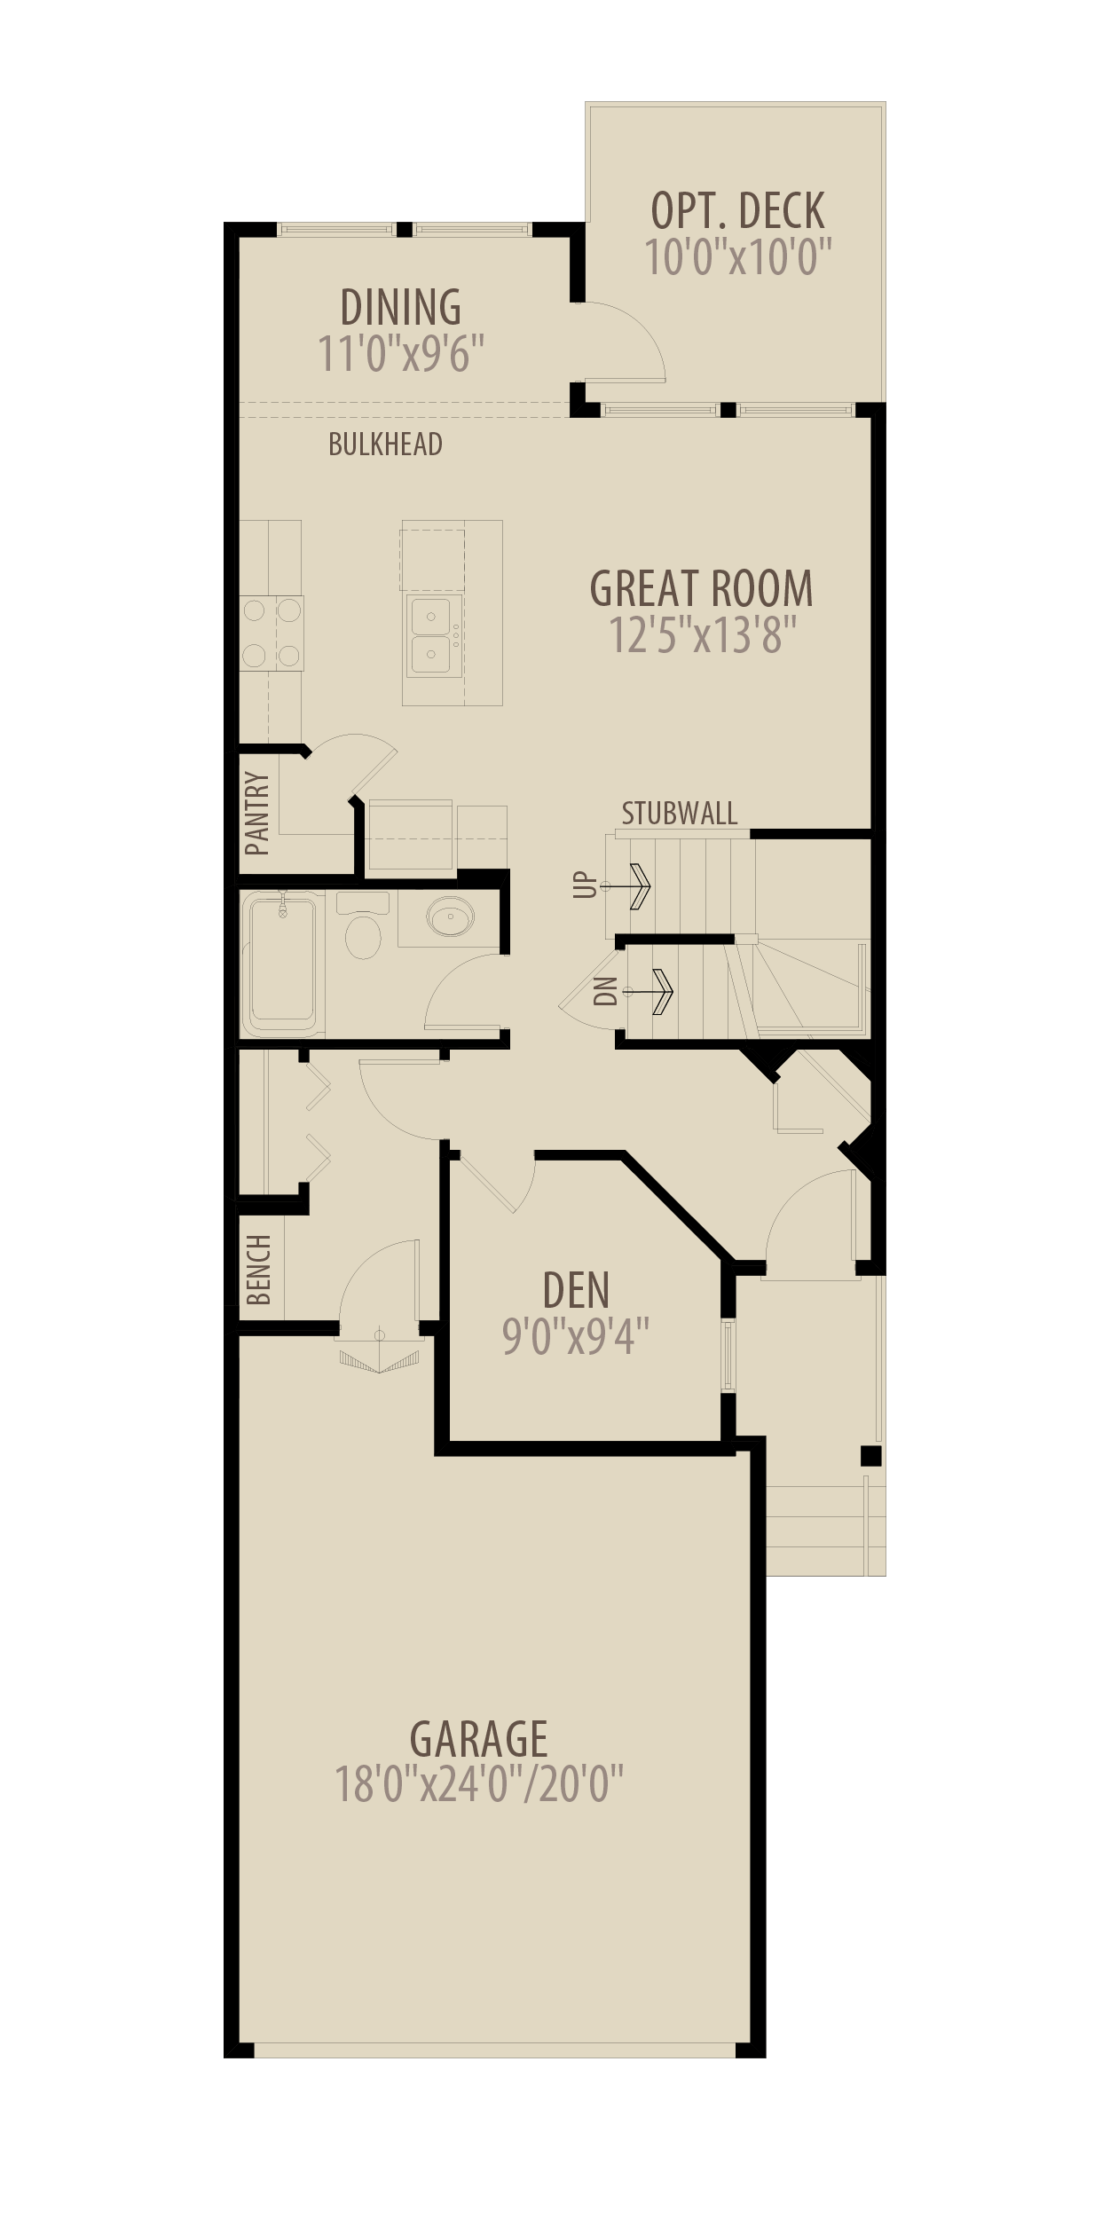 Wexford III Floorplans 141222 Option 3 Main Floor Den adds 40 sq ft